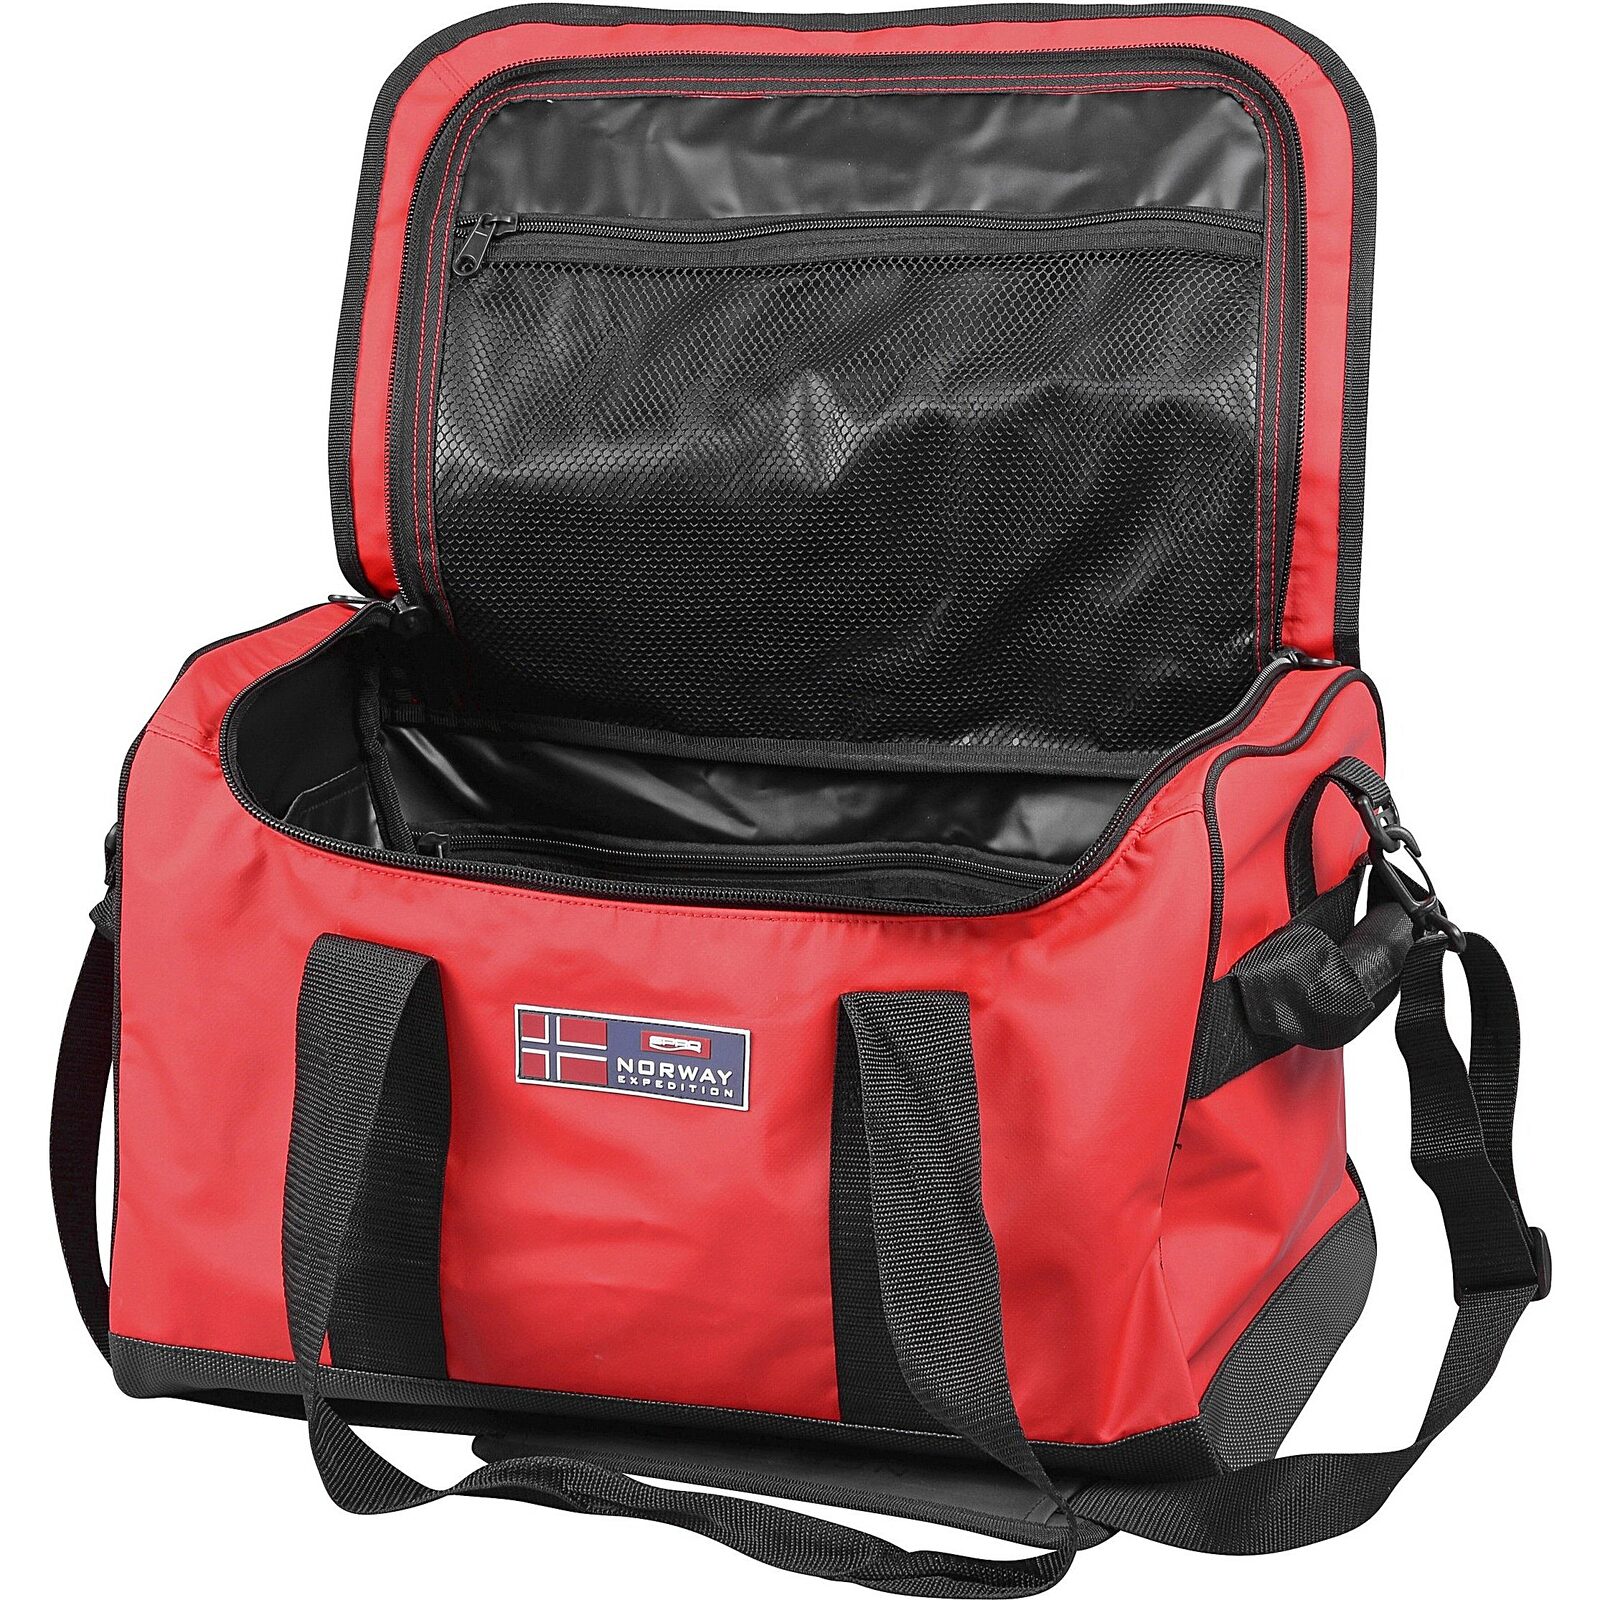 Verzadigen ongezond staan Spro Norway Expedition HD Duffel Bag kopen? Hengelsport Webshop